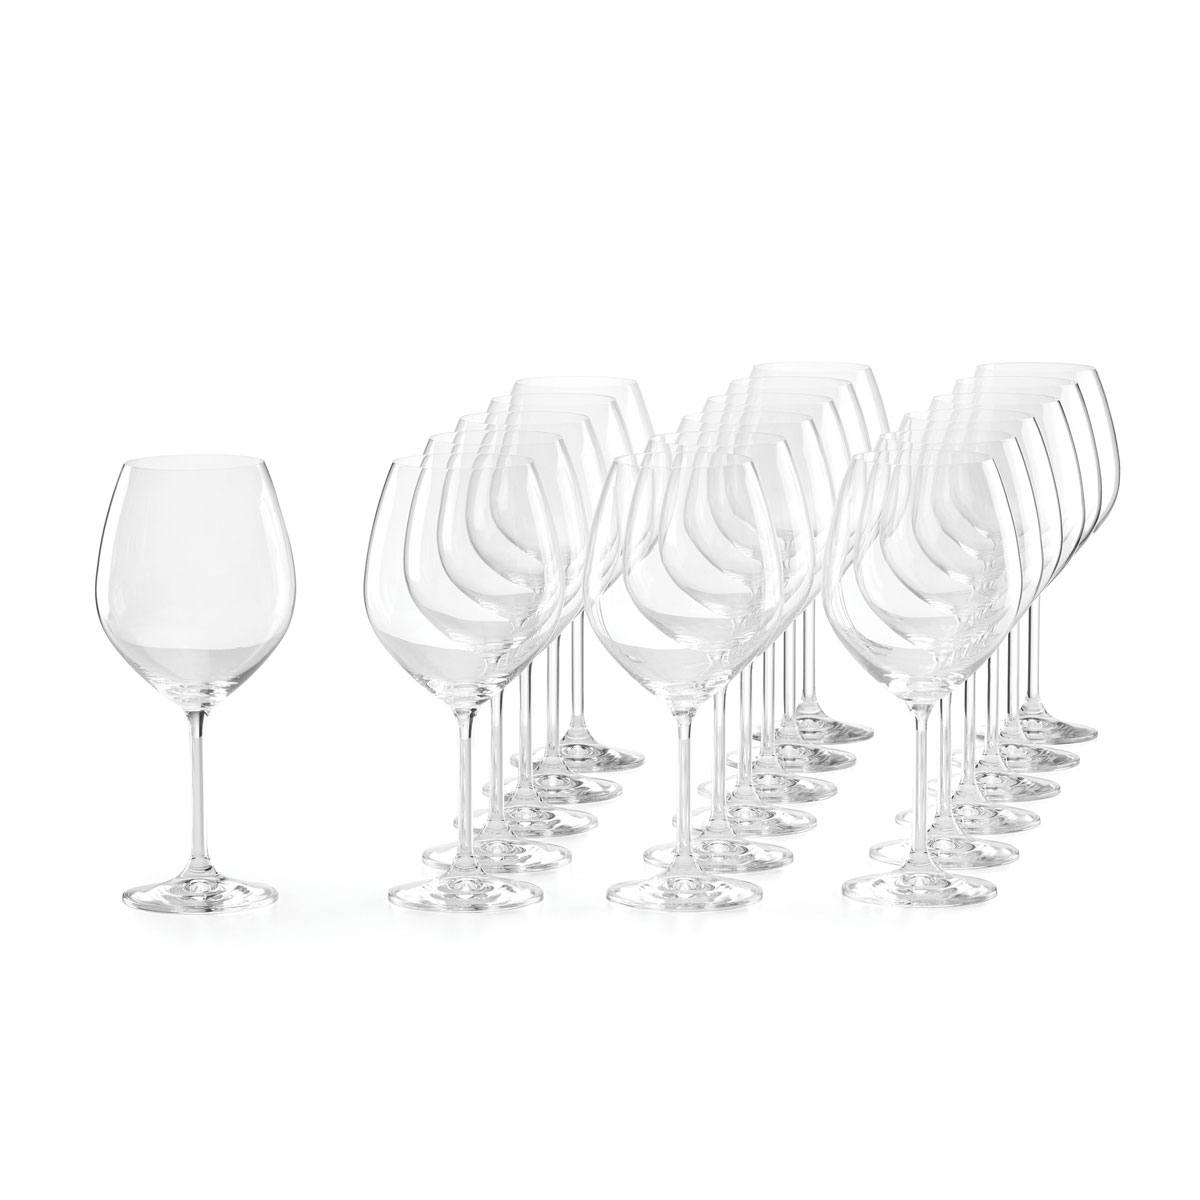 Lenox Tuscany Classics Red Wine Glasses, Set Of 18